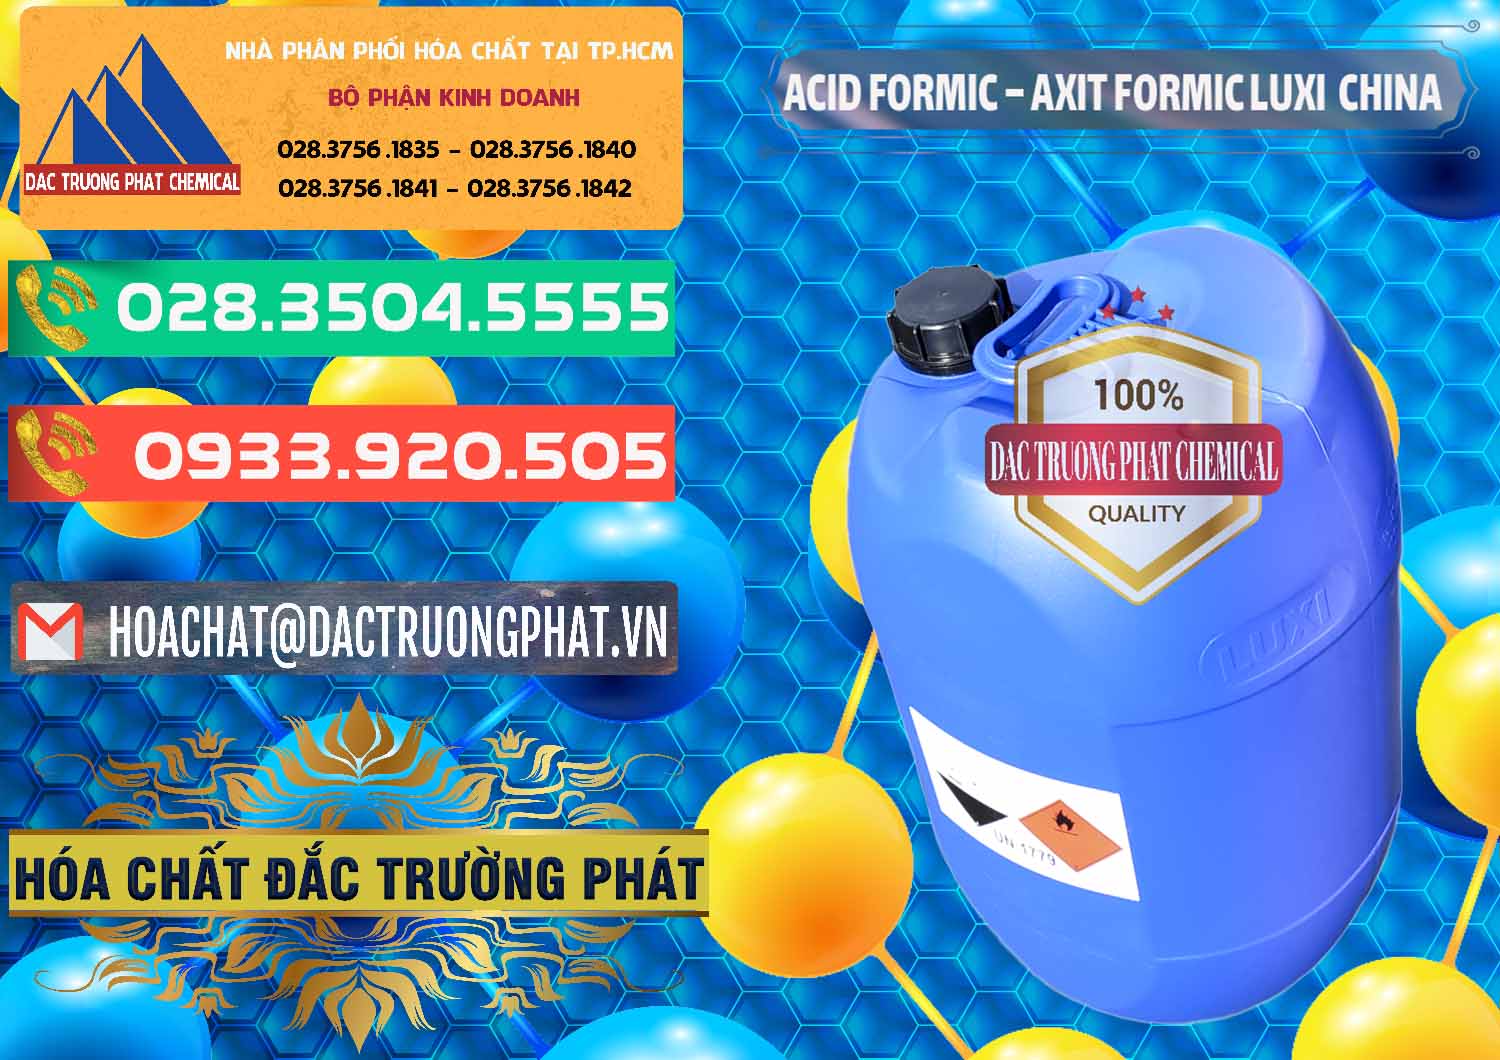 Nơi chuyên bán & phân phối Acid Formic - Axit Formic Luxi Trung Quốc China - 0029 - Chuyên cung cấp - kinh doanh hóa chất tại TP.HCM - congtyhoachat.com.vn